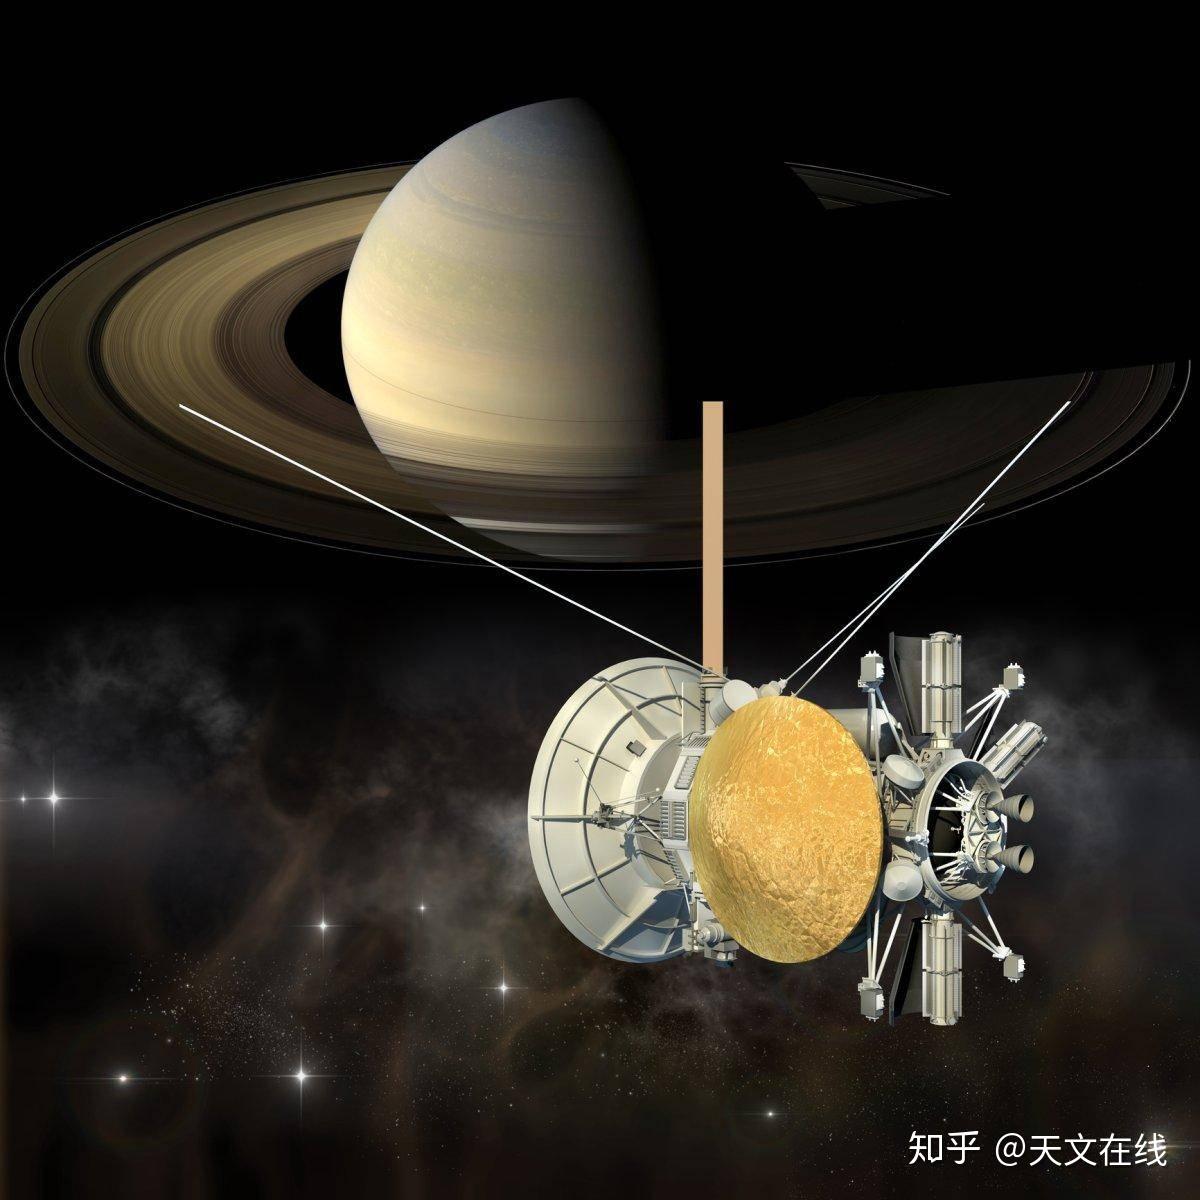 月球后方的土星 – NASA中文